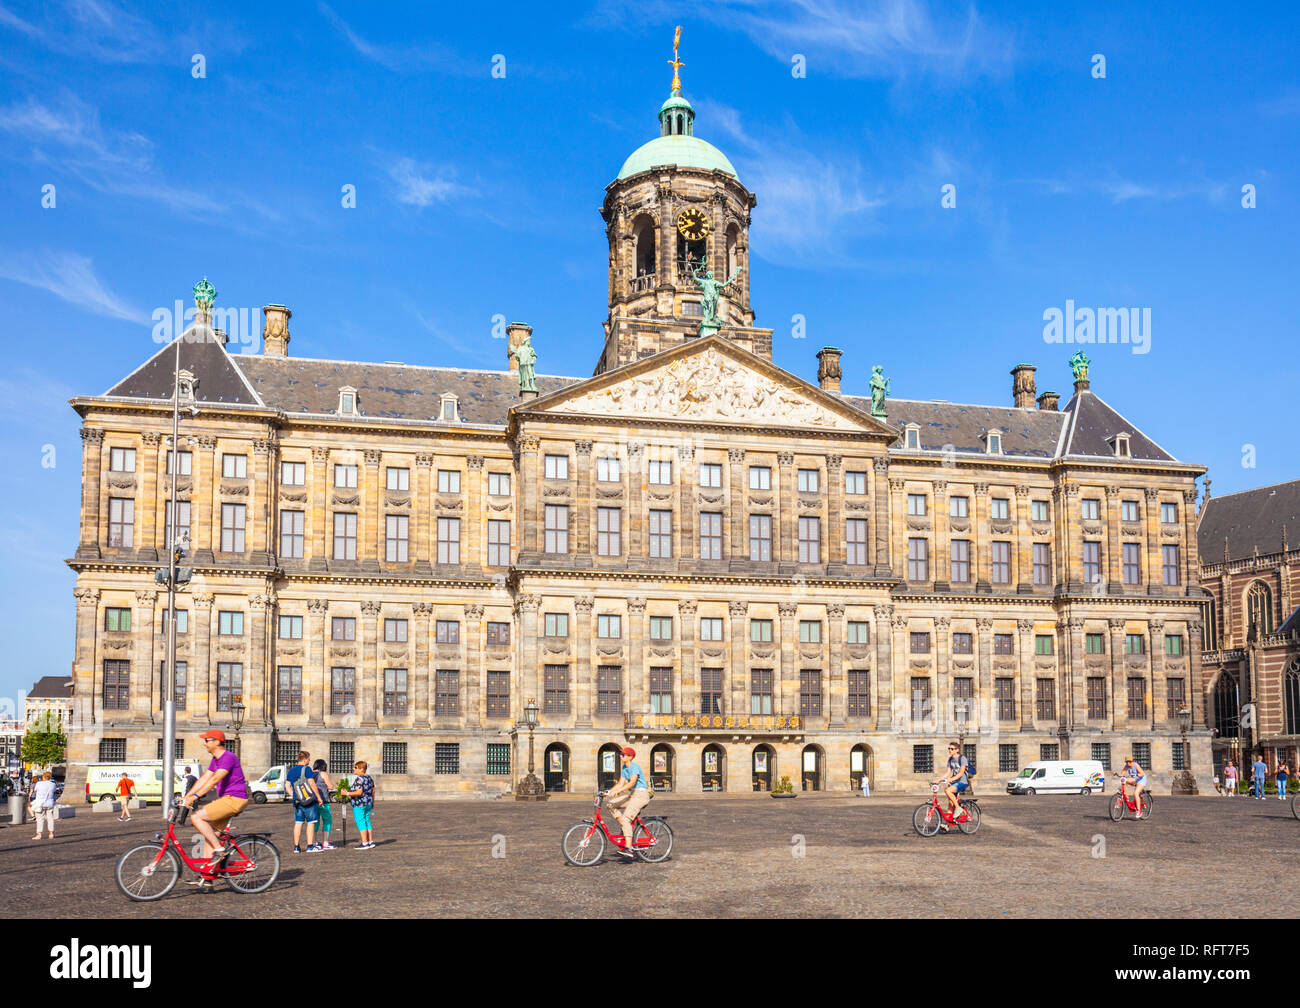 Amsterdam Royal Palace (Koninklijk Paleis) in den Dam Platz und Radfahrer, Amsterdam, Noord-Holland, Niederlande, Europa Stockfoto